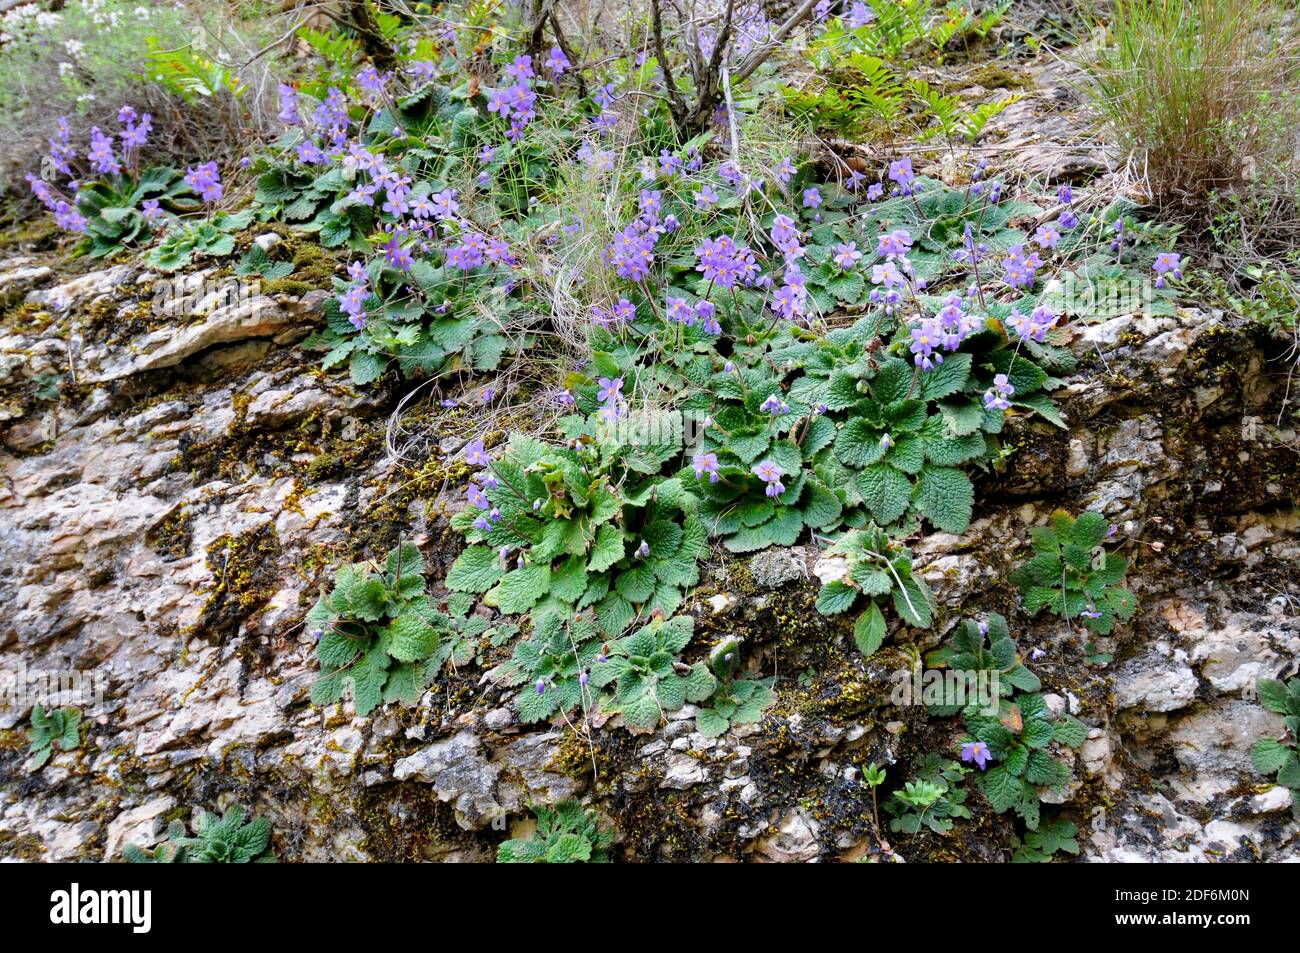 Violeta pirenaico o mulleina roseta (Ramonda myconi o Ramonda pyrenaica) Es una hierba perenne endémica de los Pirineos y las montañas de piedra caliza del norte Foto de stock